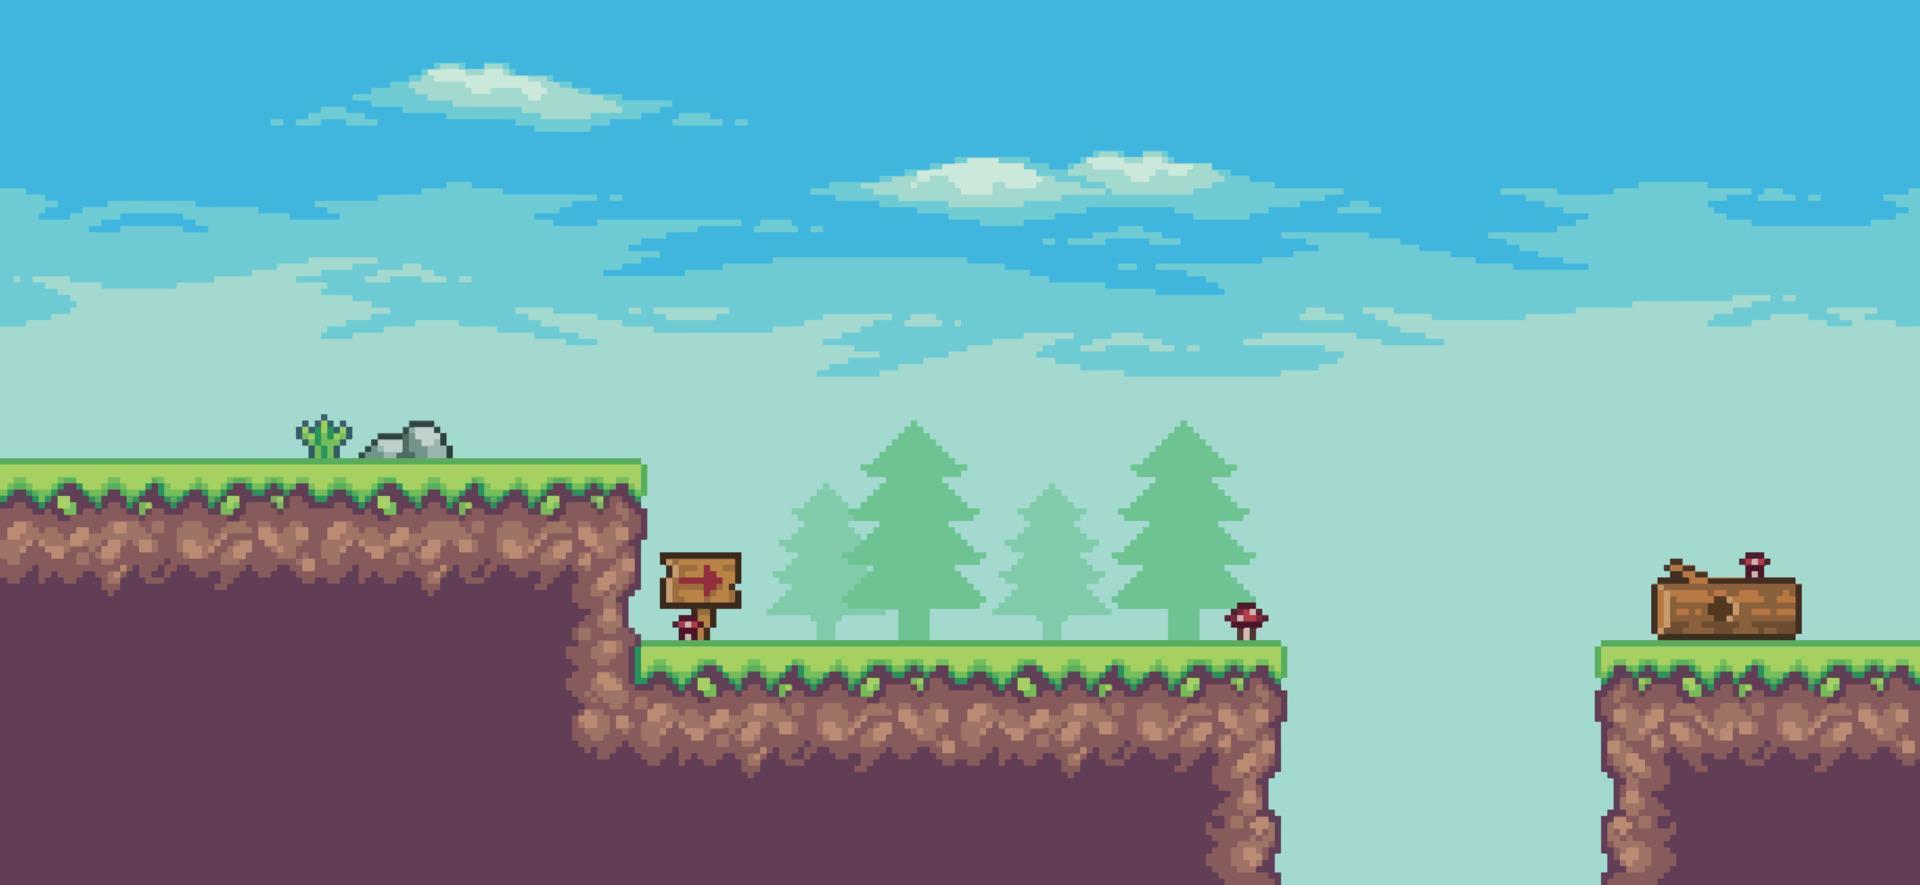 escena de juego de arcade de pixel art con árboles, tronco, tablero, piedras y nubes fondo de 8 bits vector